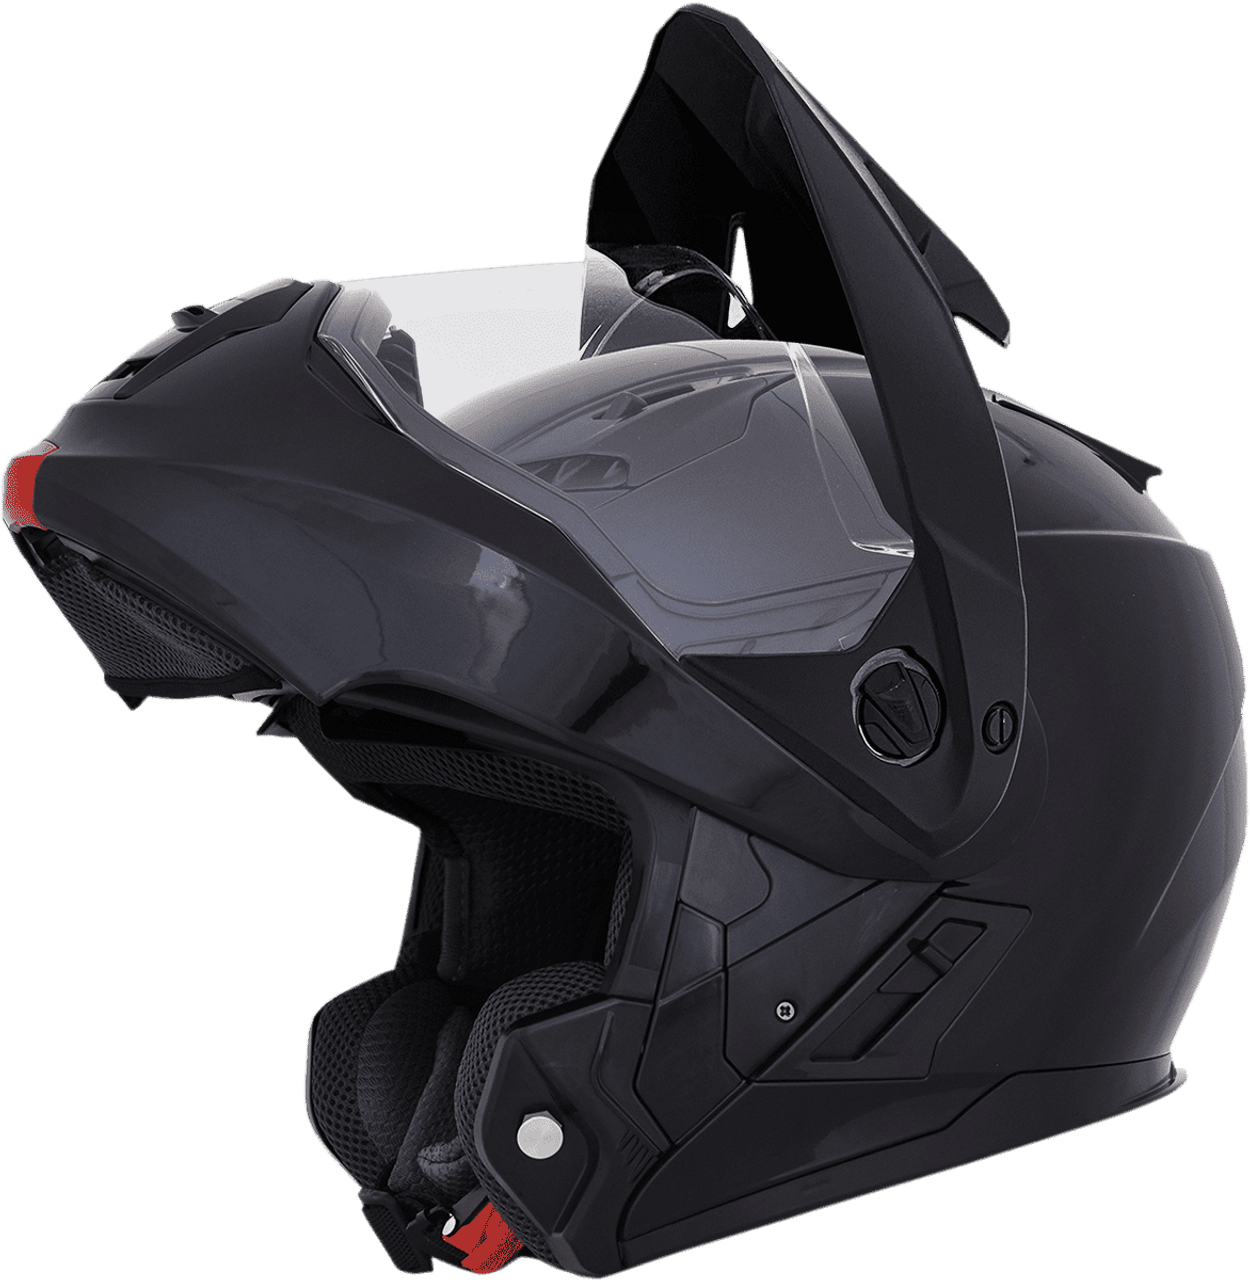 AFX FX-111DS Dual Sport Motorcycle Helmet